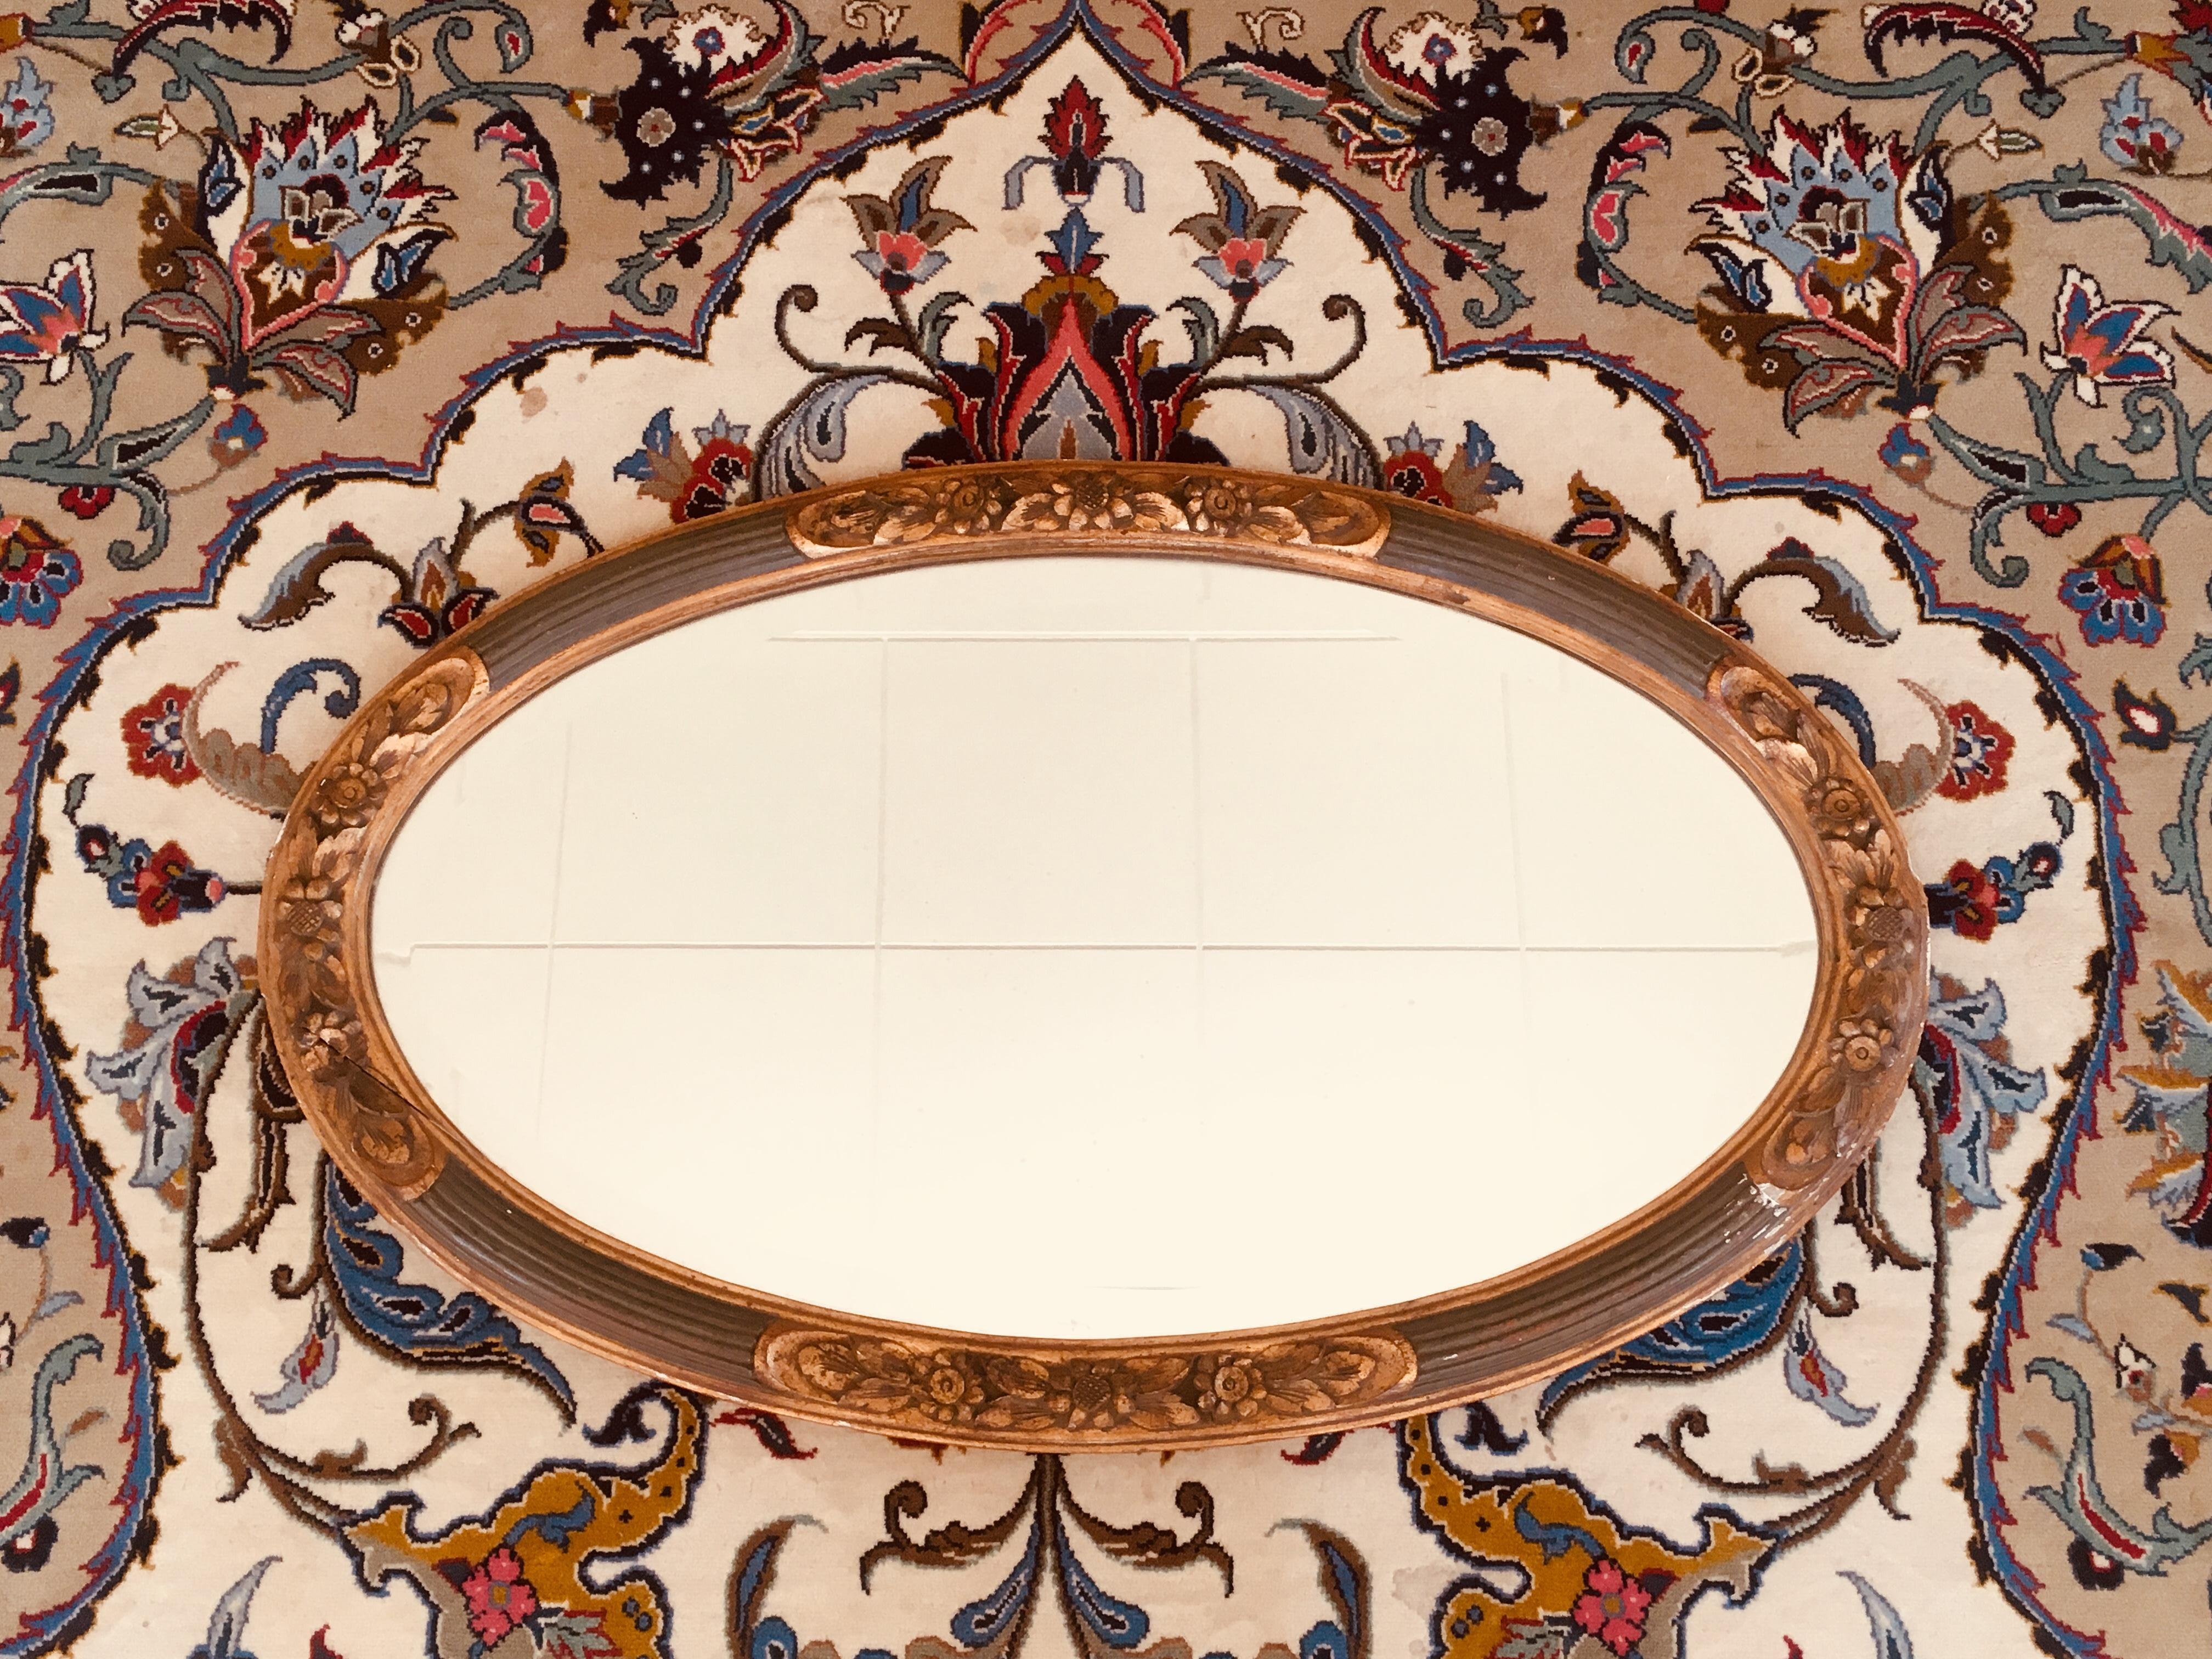 Grand miroir ovale en bois doré peint à la main avec verre en cristal original par Louis SÜE et André MARE, France, vers 1920.